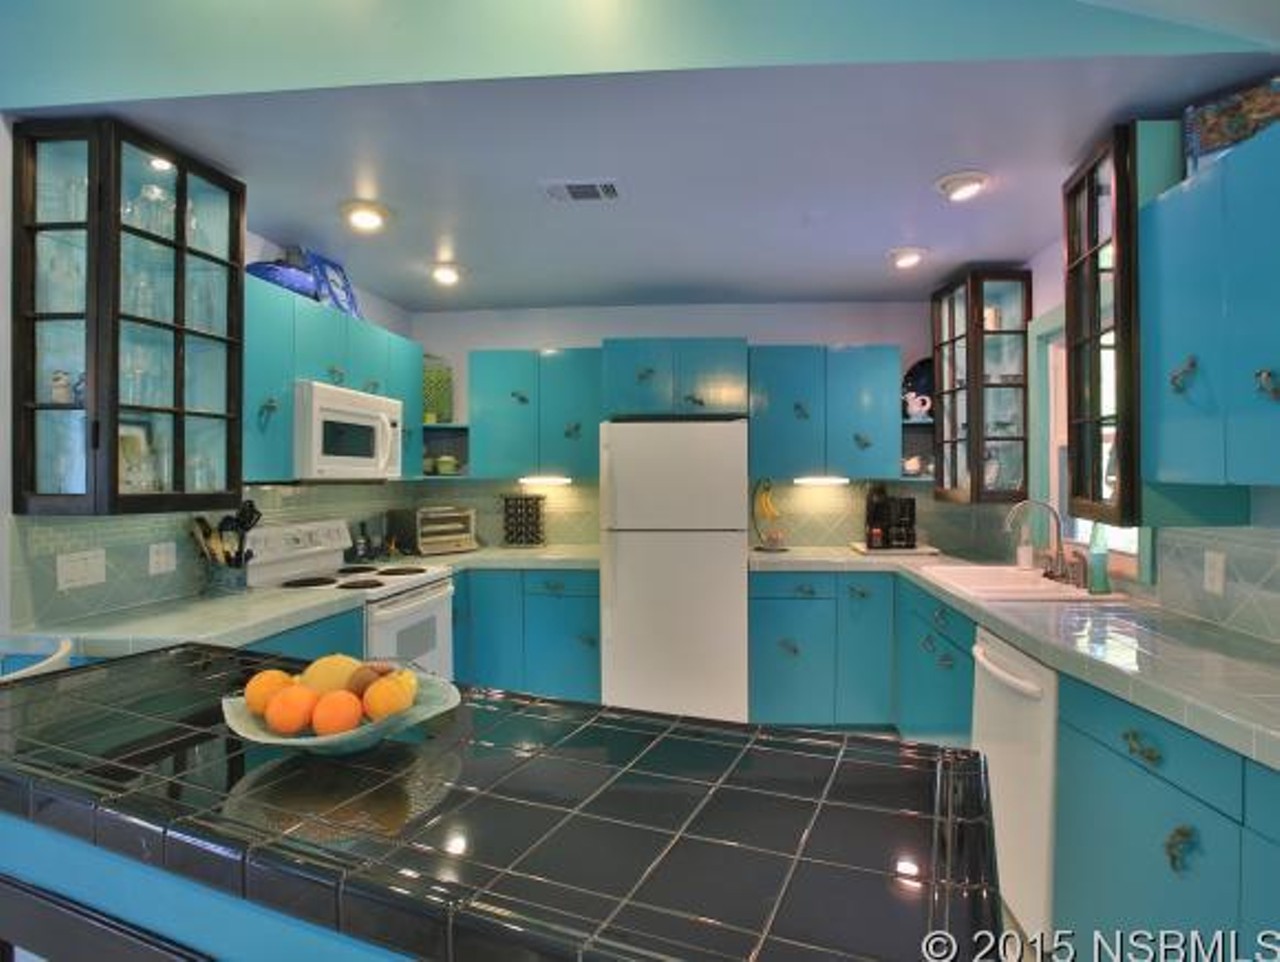 Cute kitchen.